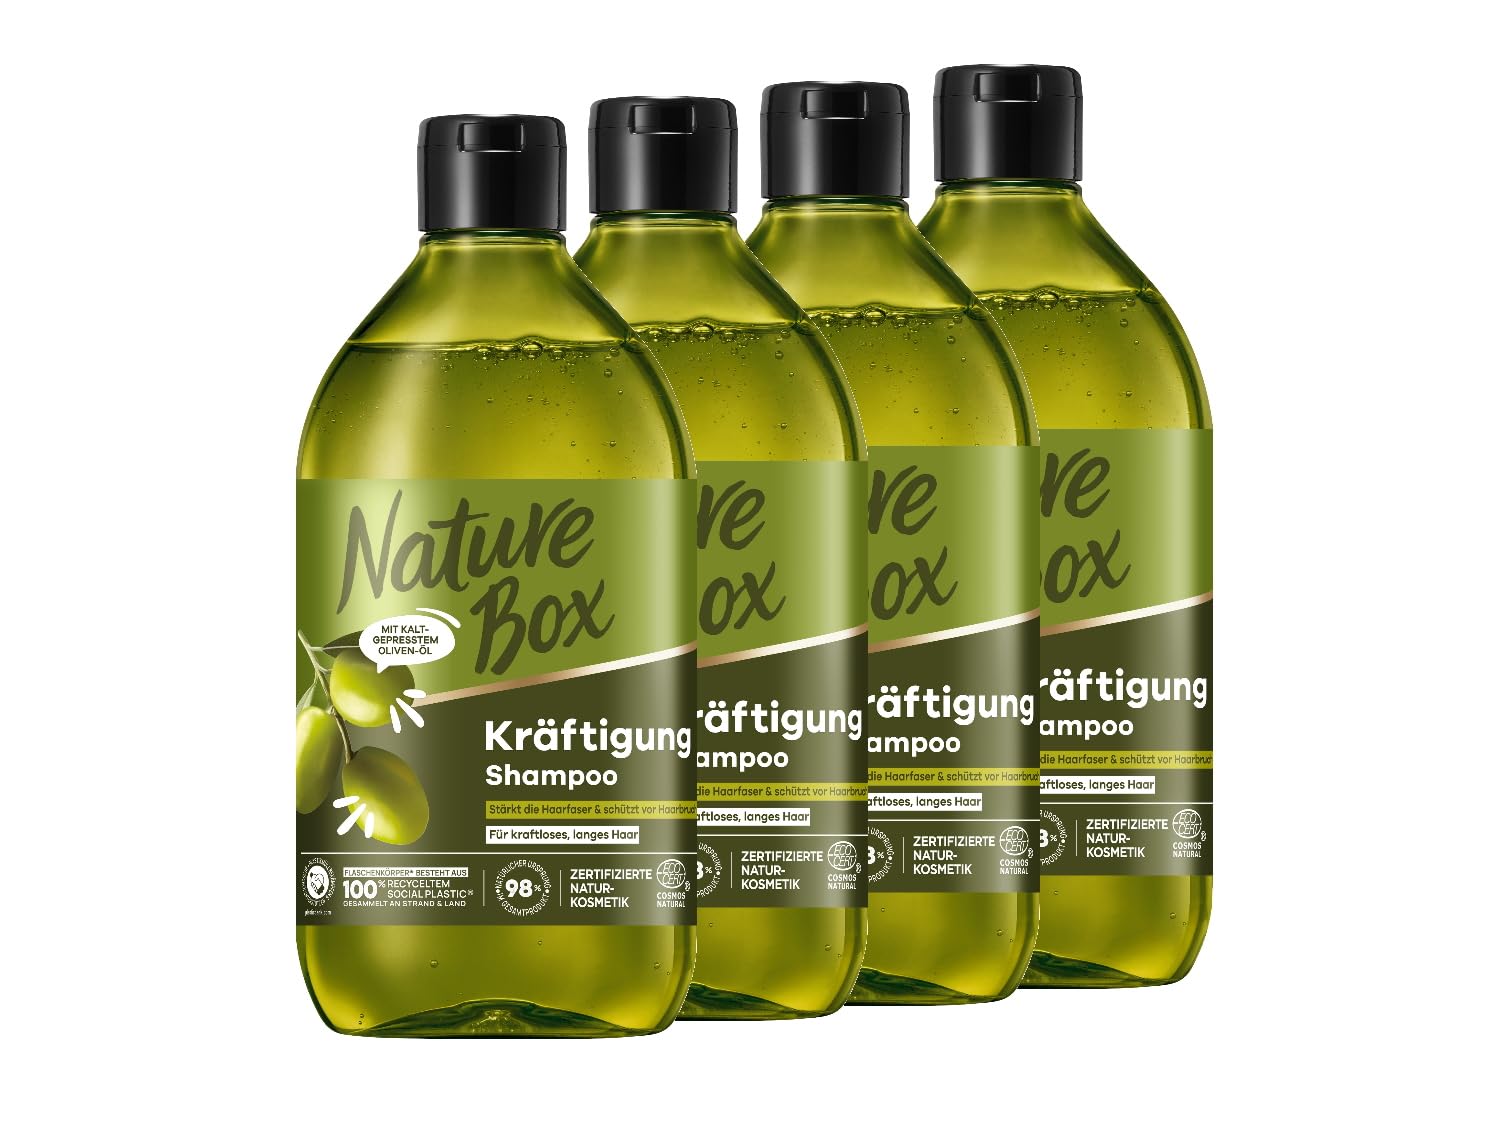 Nature Box Shampoo Kräftigung (4x 385 ml), Shampoo für lange Haare mit Oliven-Öl schützt vor Haarbruch und verleiht gepflegtes Haar, Flasche aus 100% recyceltem Social Plastic